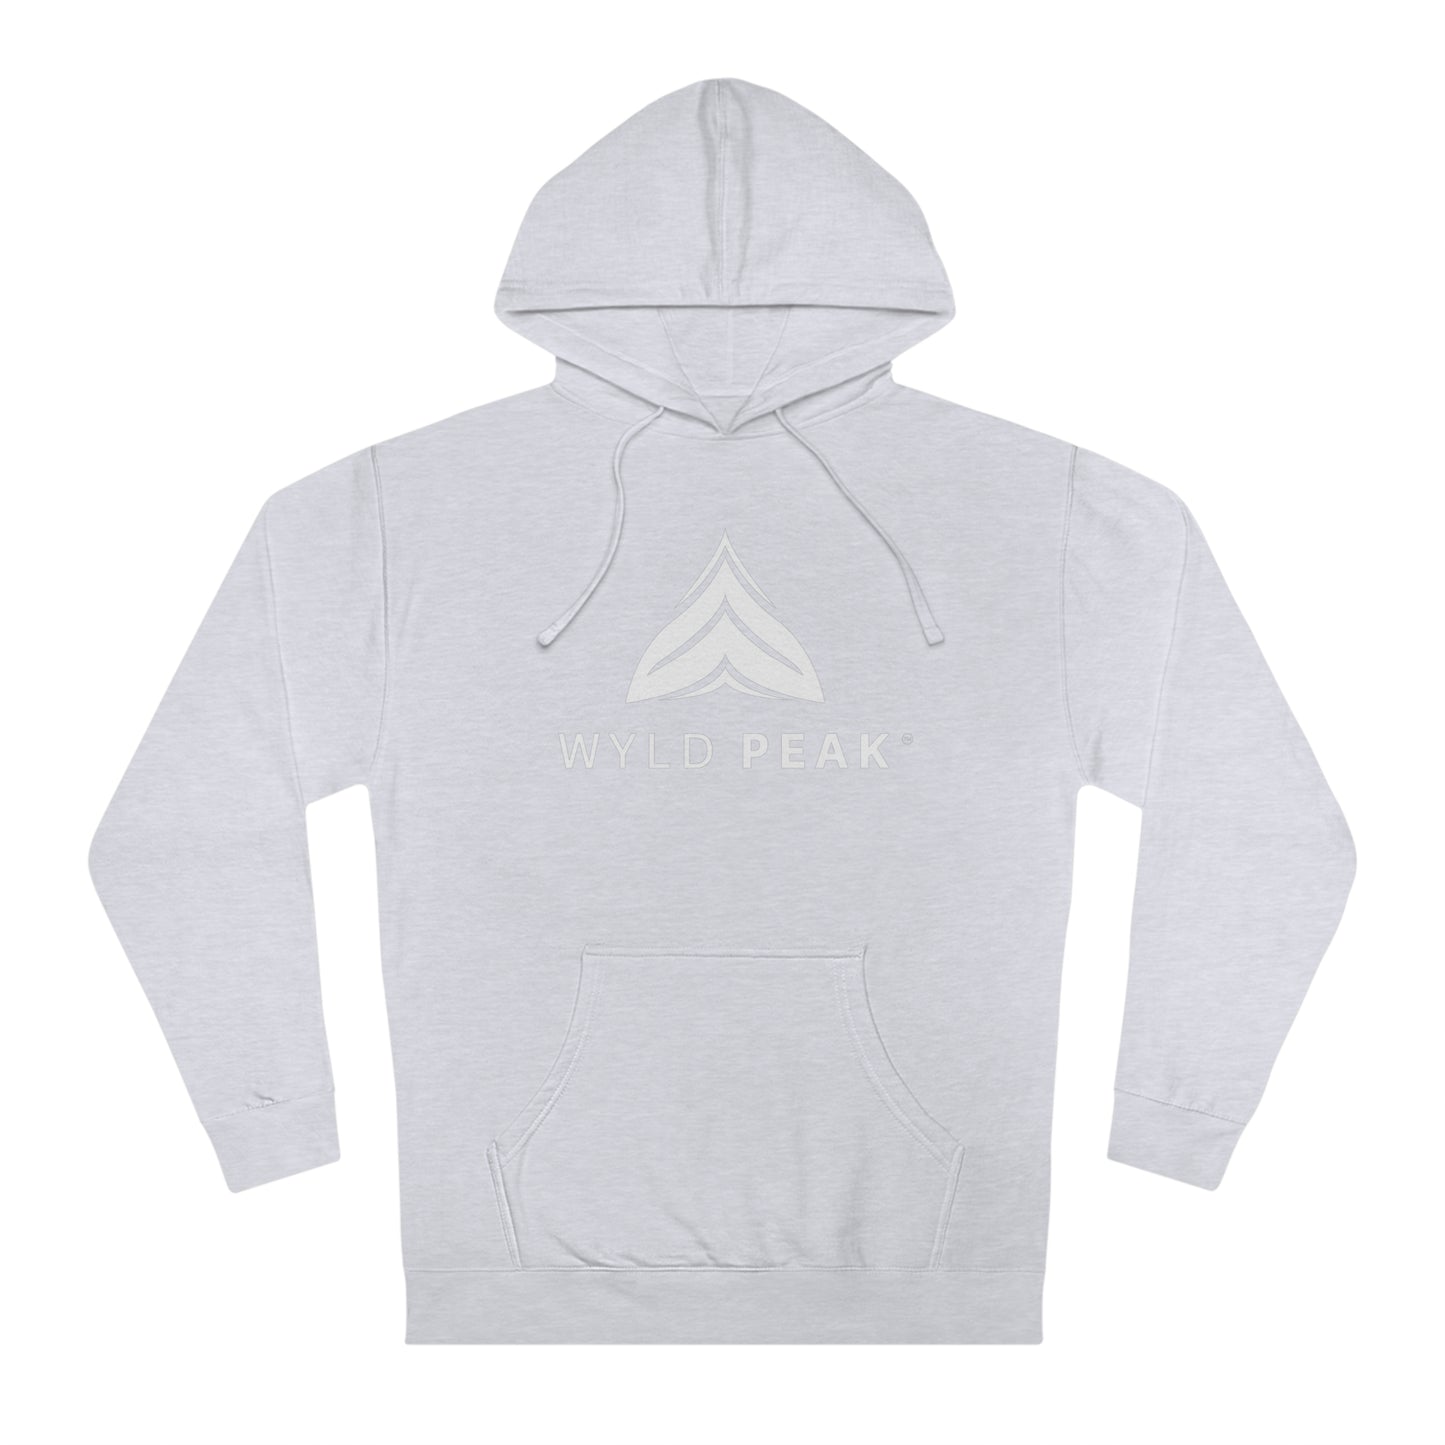 Unisex hooded sweatshirt hoodie in grey